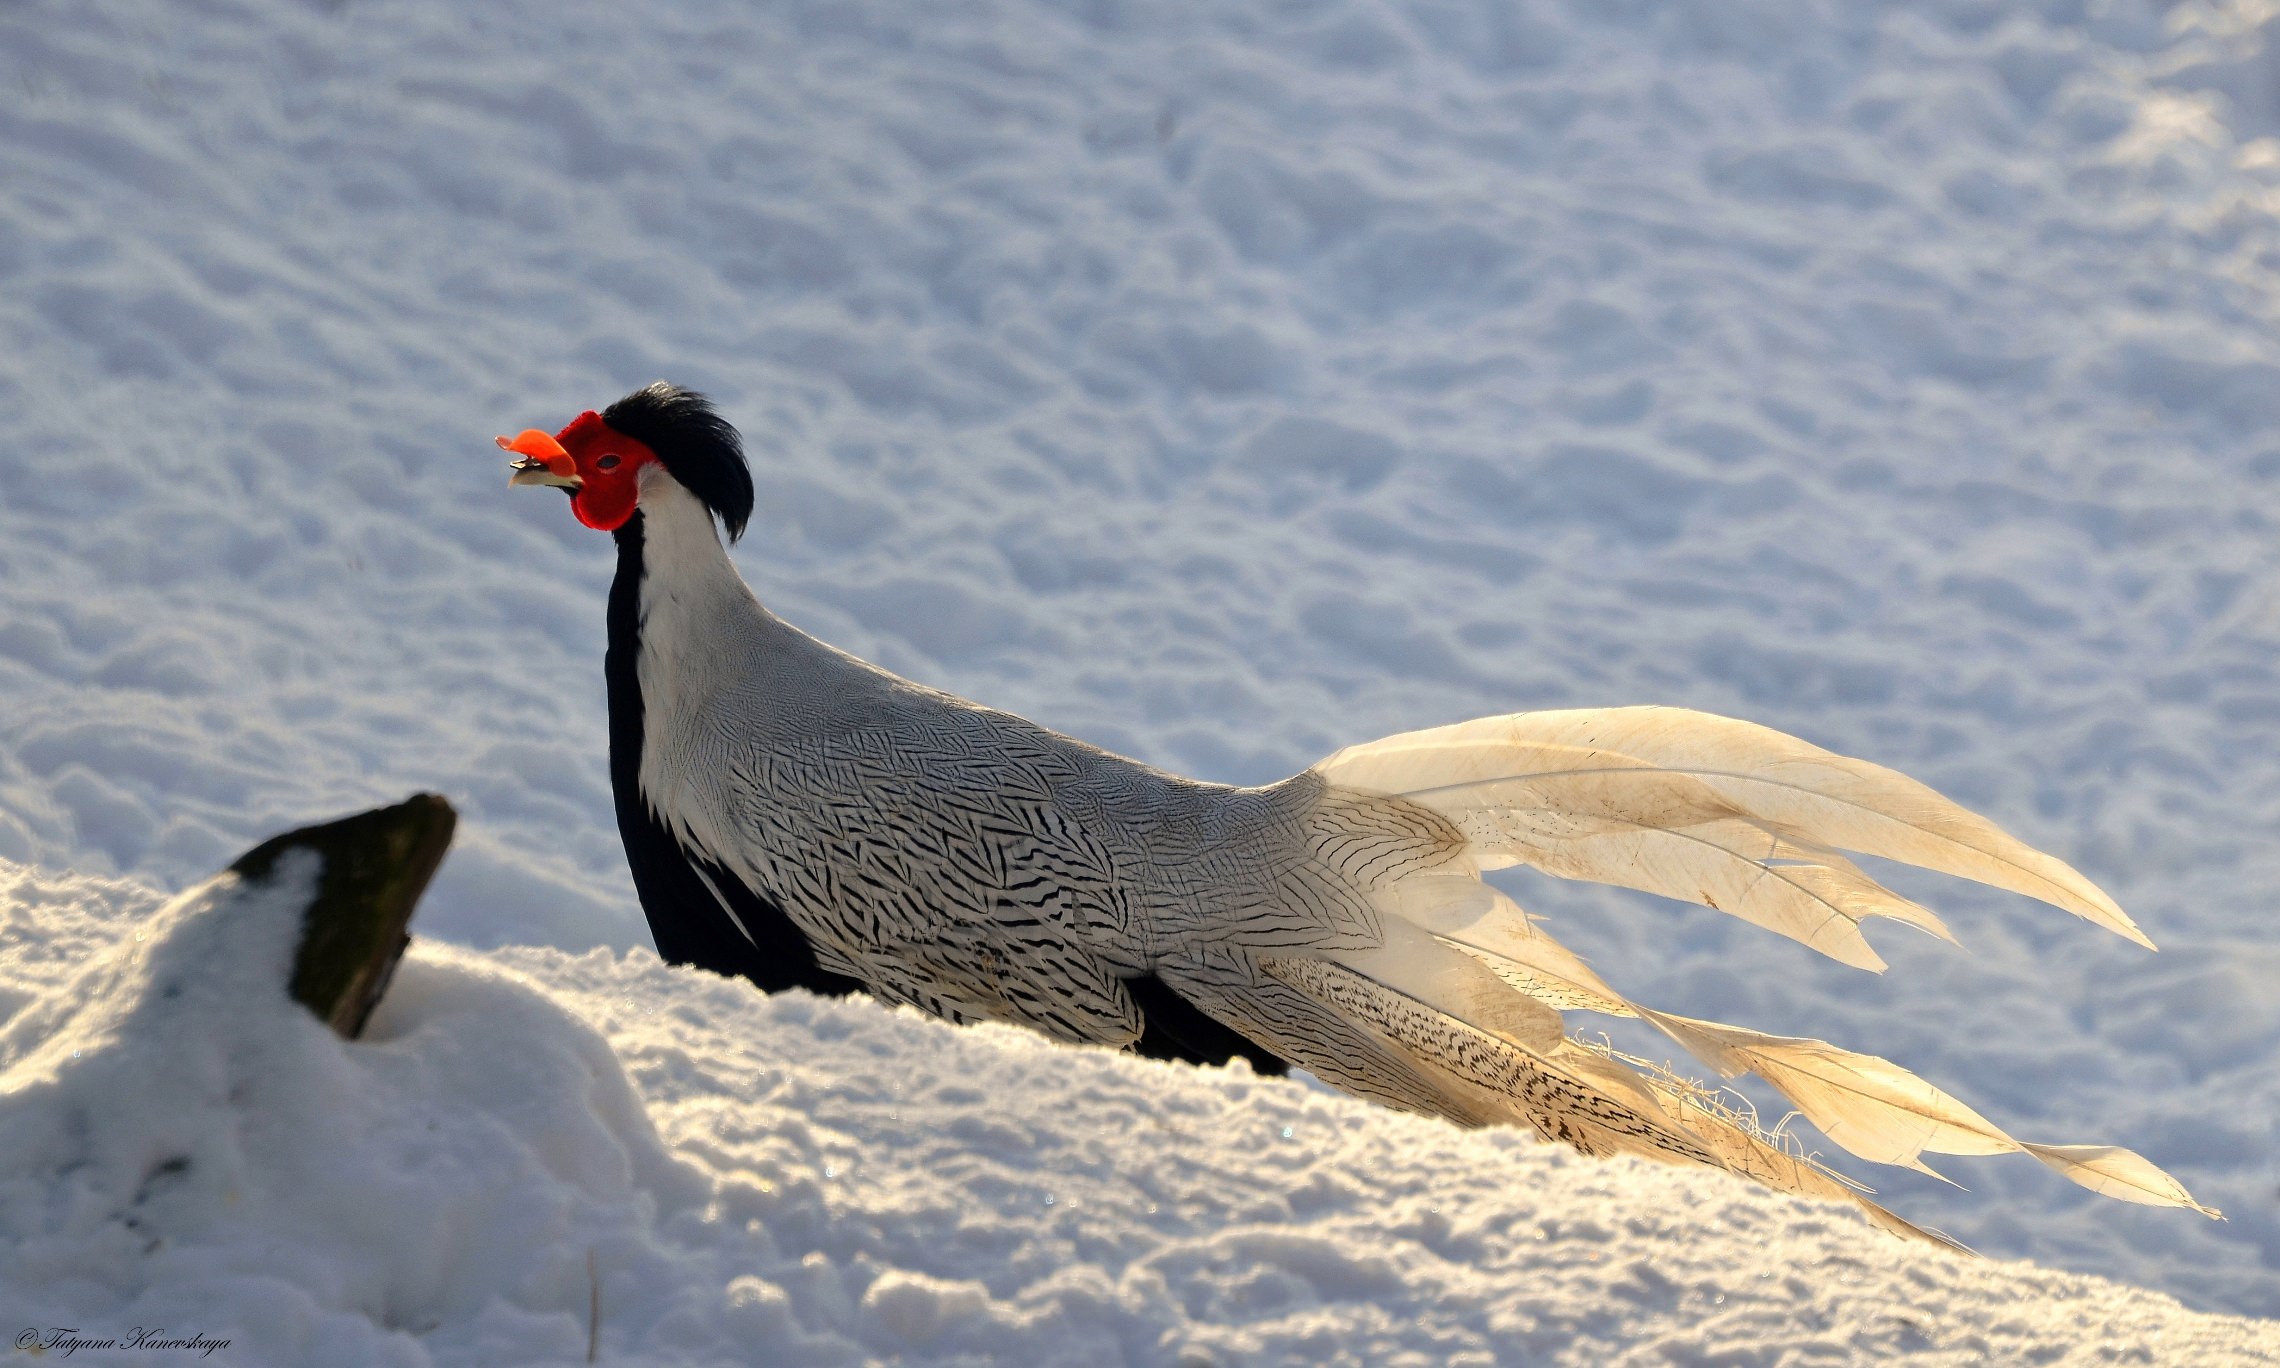 Бежал фазан по снегу